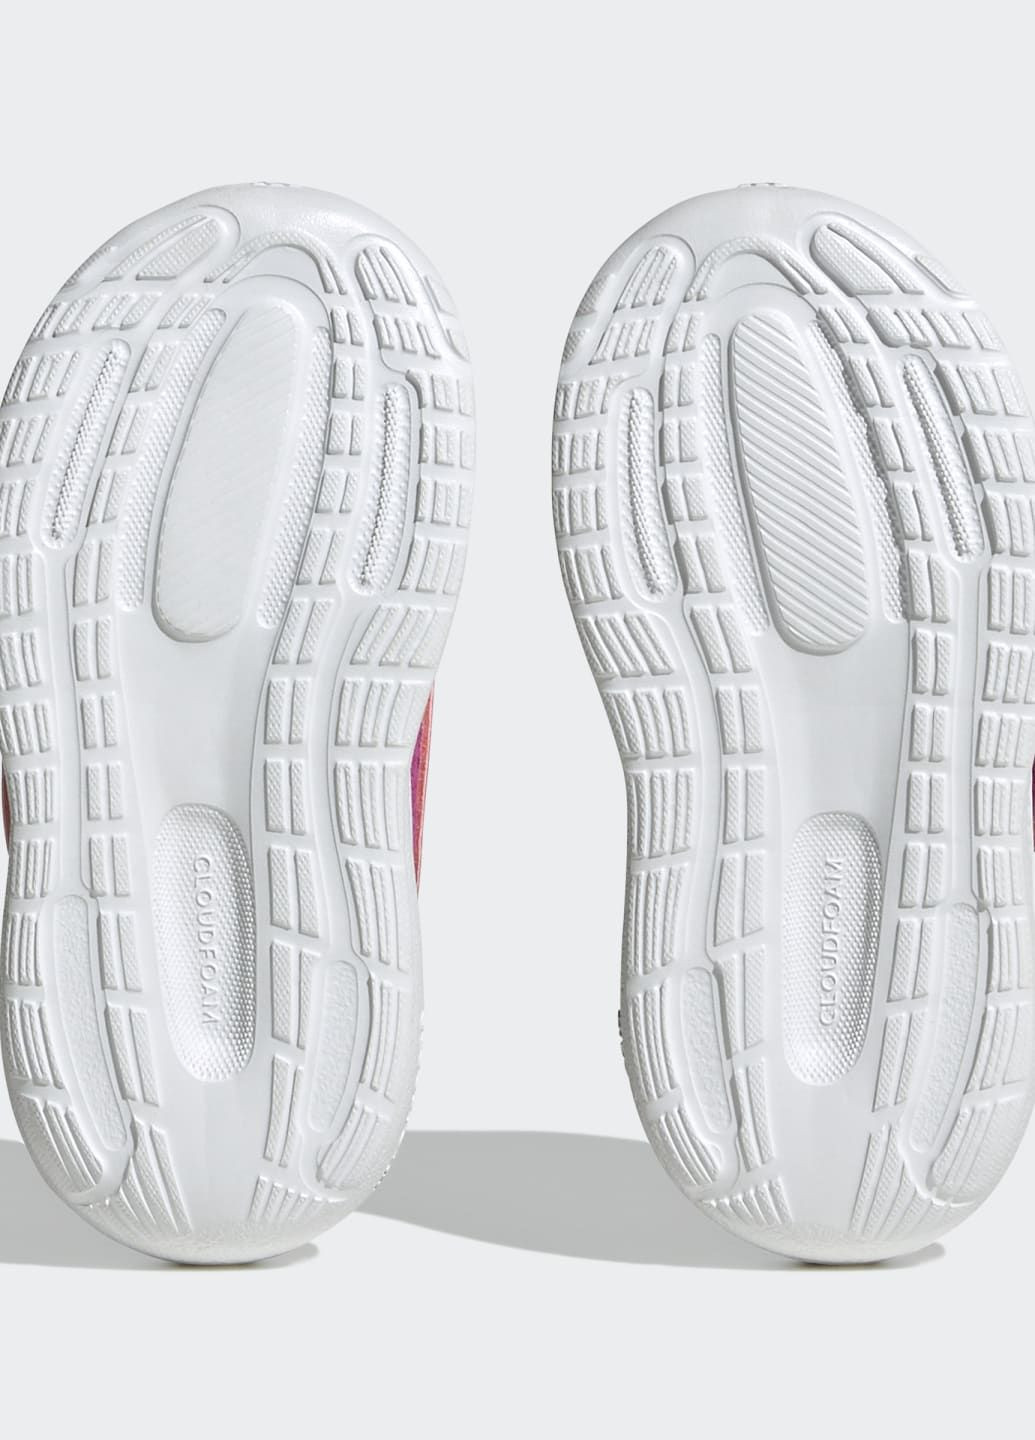 Розовые всесезонные кроссовки runfalcon 3.0 adidas